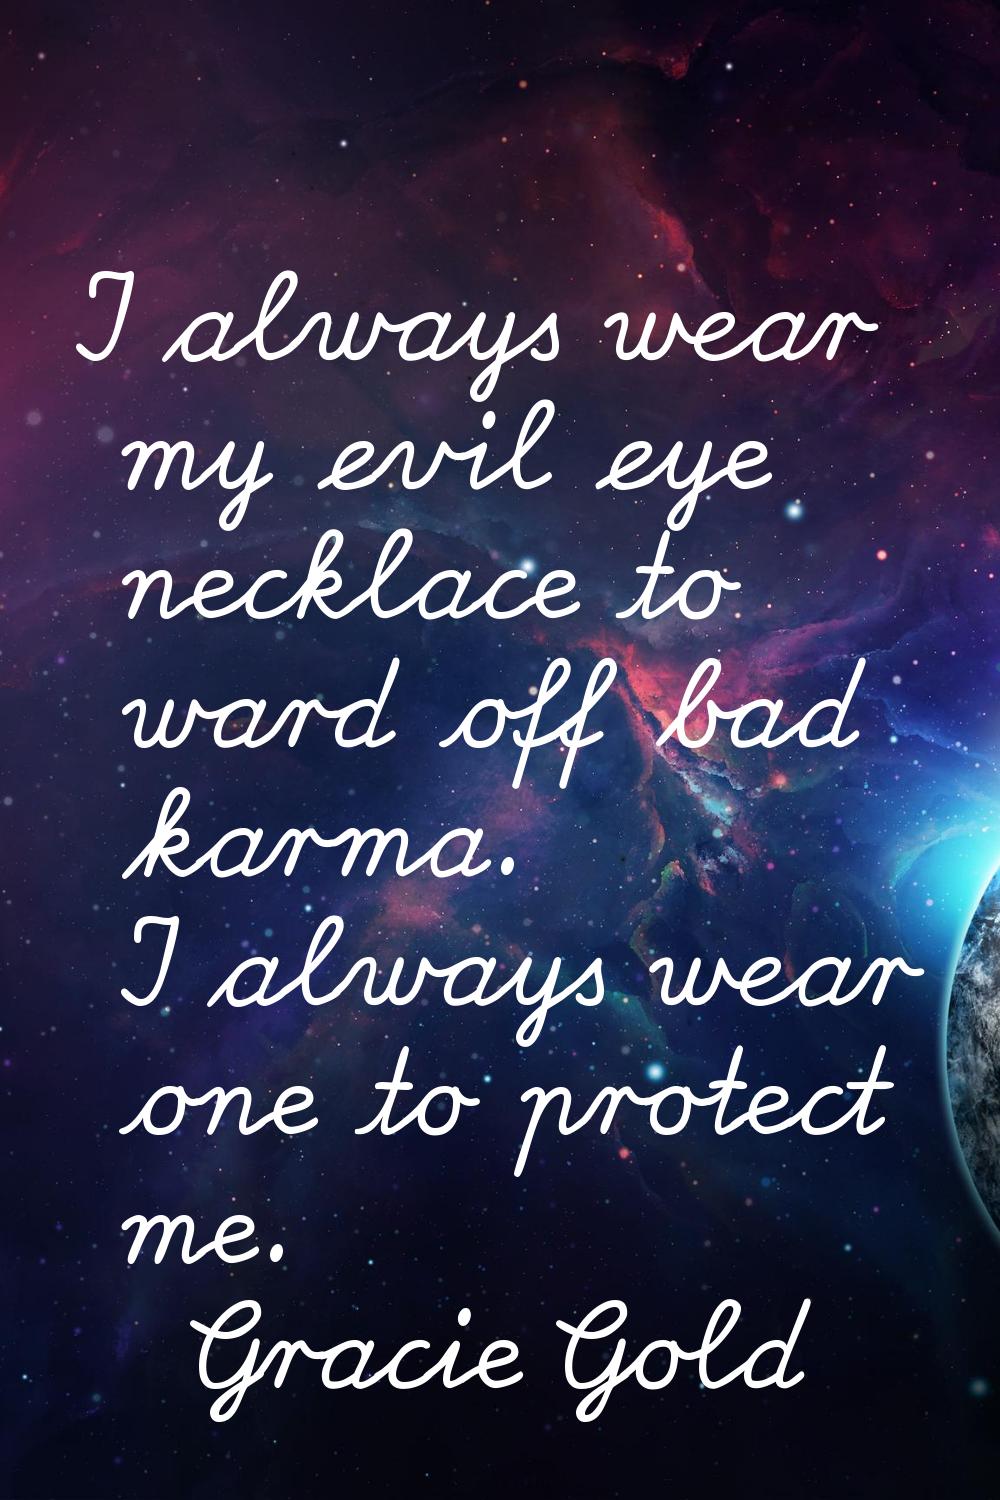 I always wear my evil eye necklace to ward off bad karma. I always wear one to protect me.